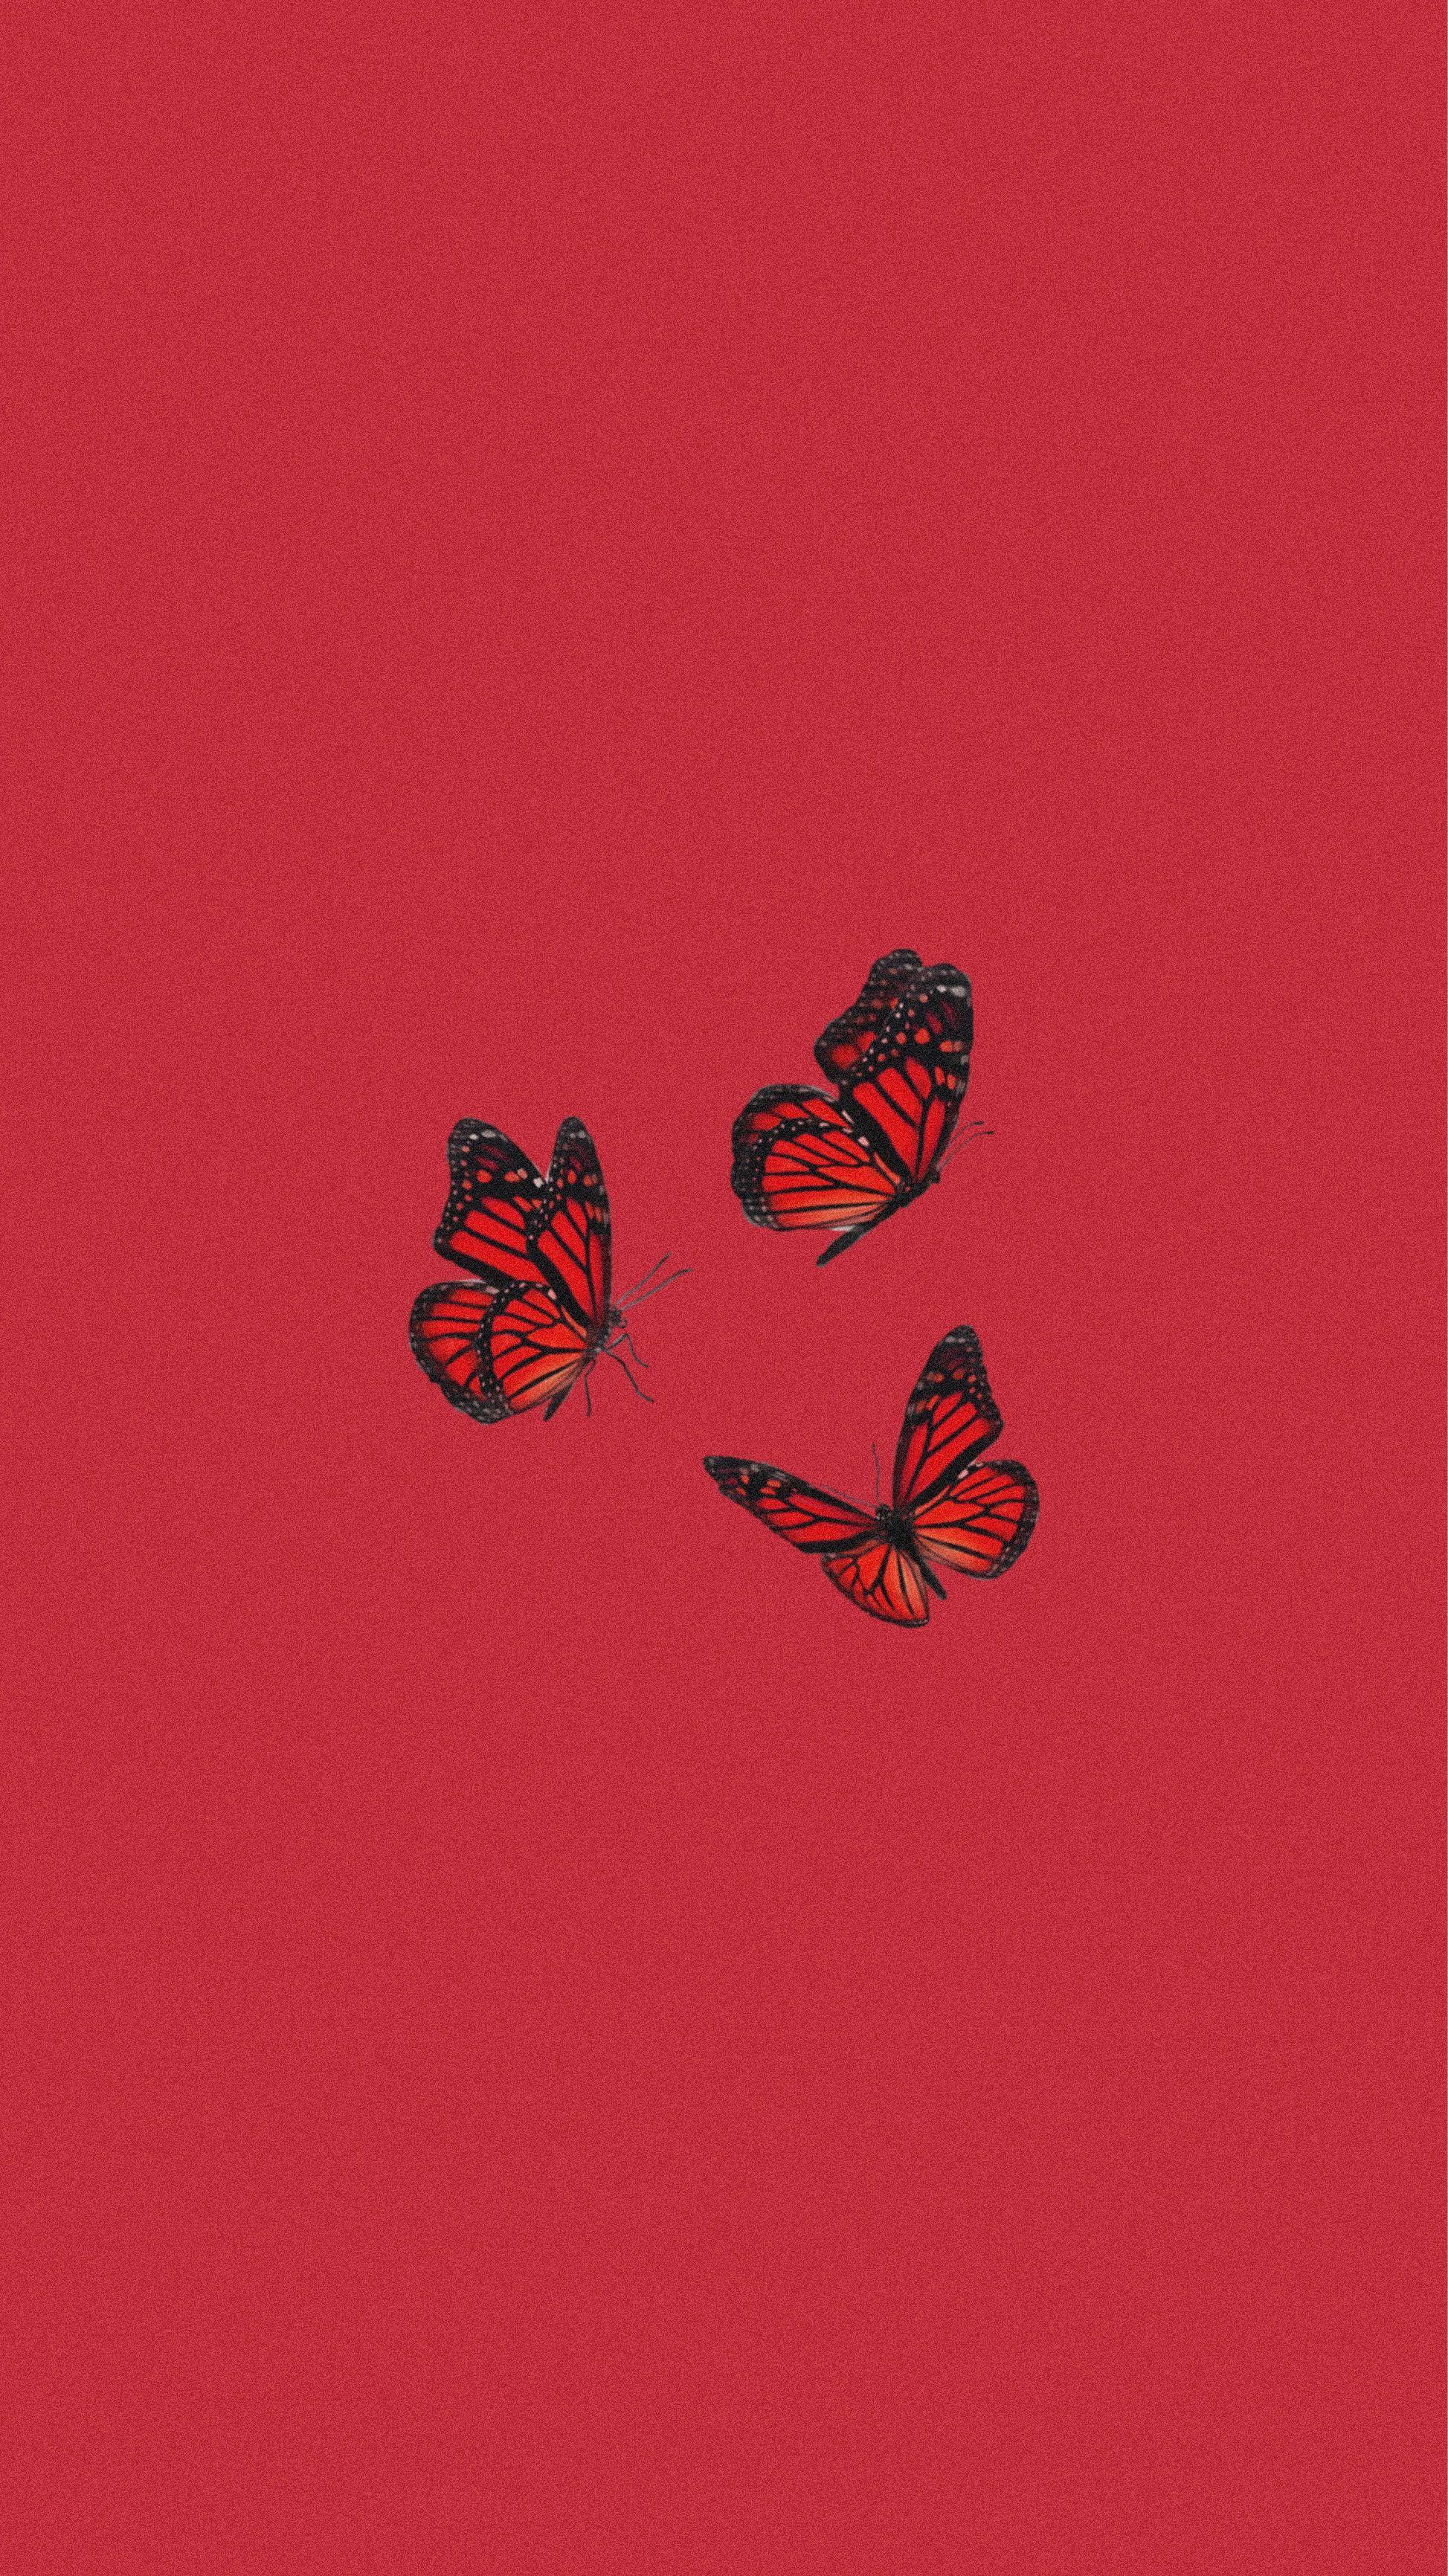 Red Butterfly Wallpaper by xXDarkKeybladeXx on DeviantArt